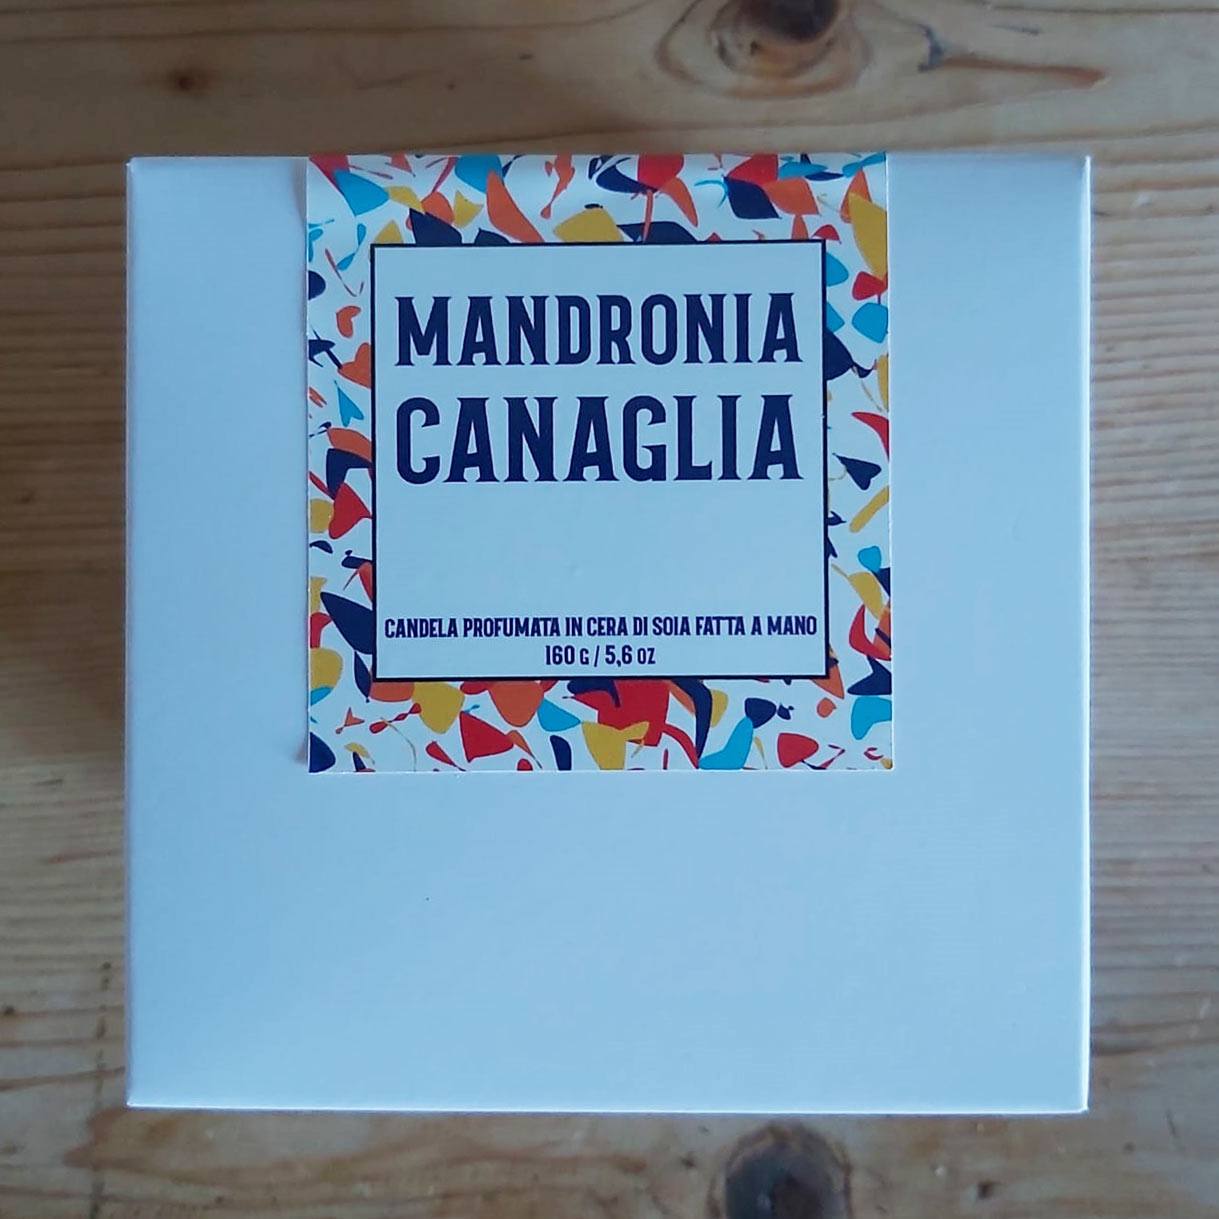 Mandronia Canaglia - Candela profumata